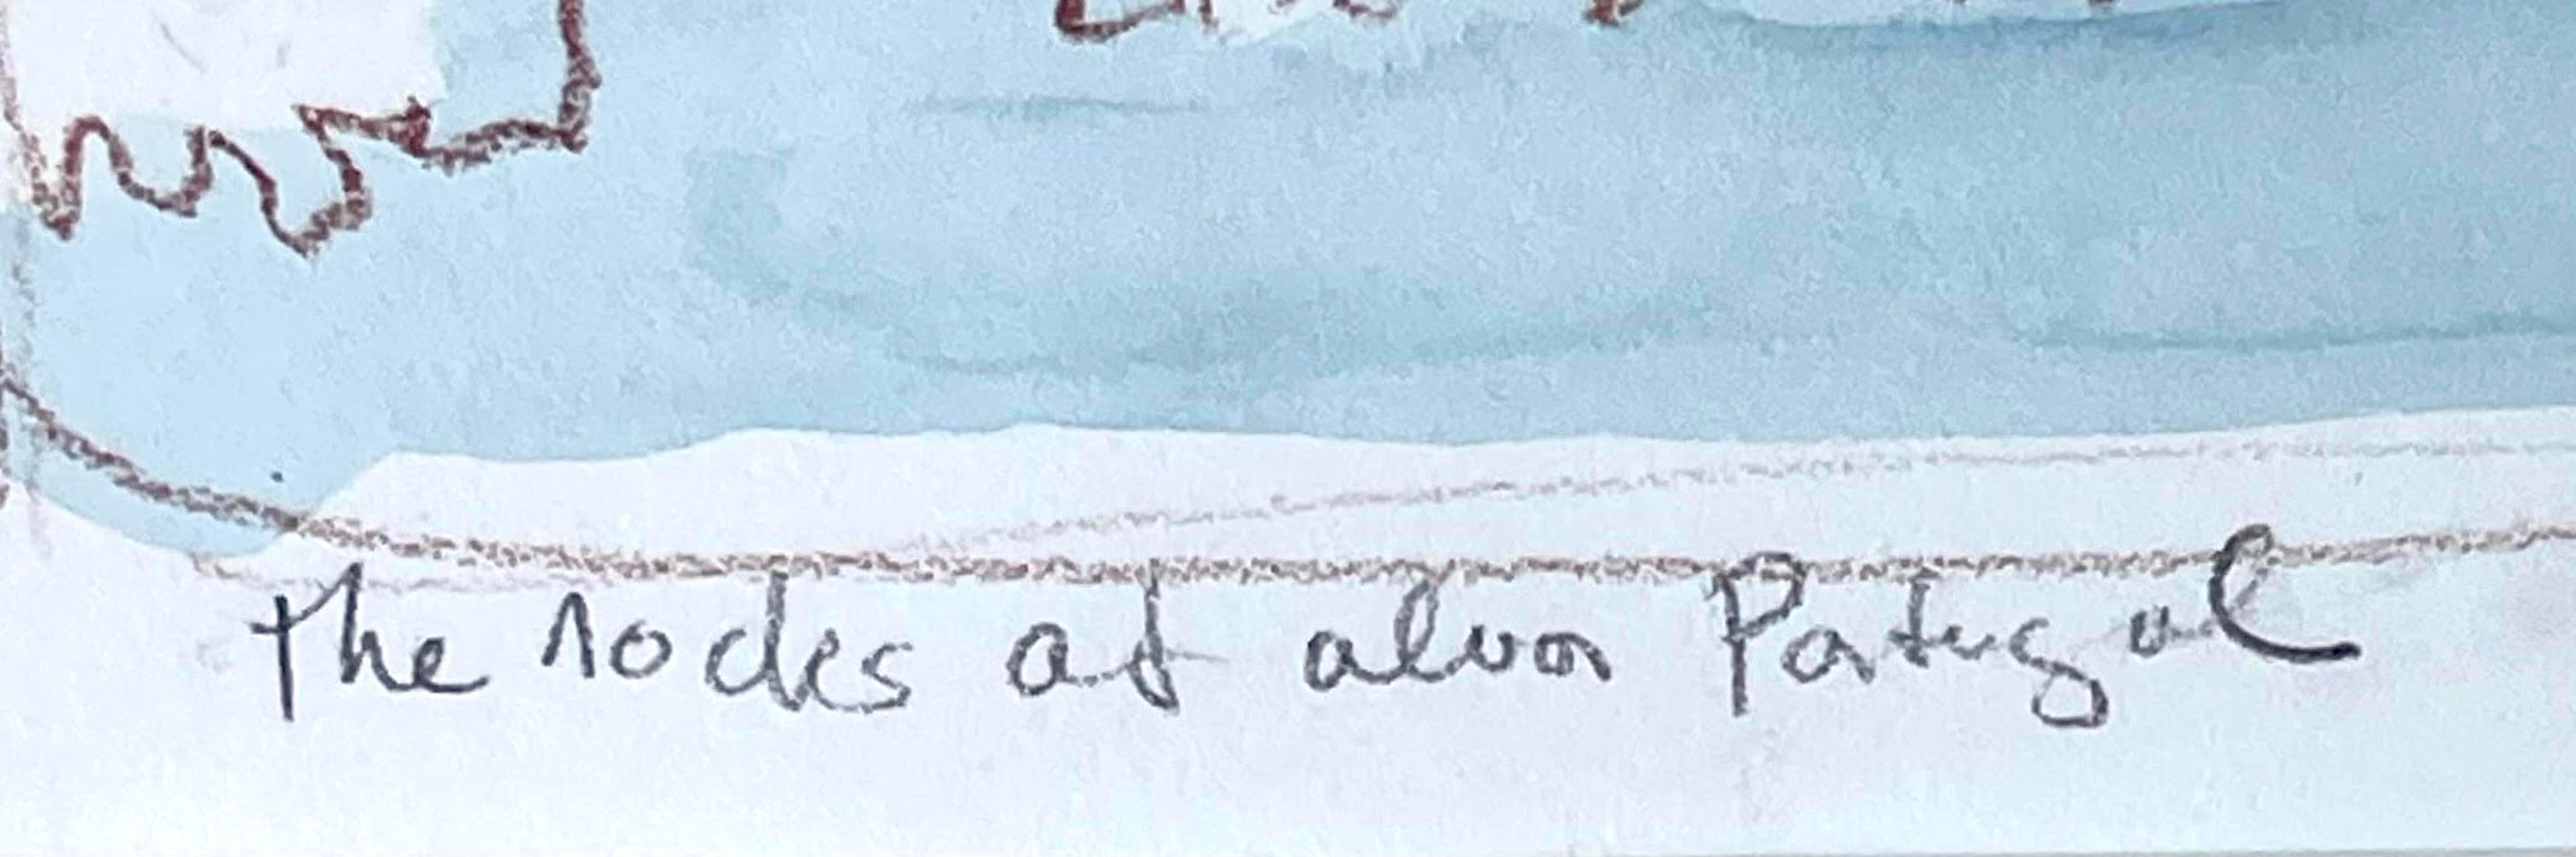 Audrey Flack
Die Knotenpunkte von Alvor Portugal, 1982
Aquarell auf Papier (mit originalem Label der Louis Meisel Gallery auf der Rückseite)
Auf der Vorderseite mit Bleistift signiert und betitelt, auf der Rückseite mit dem Label der Galerie Louise